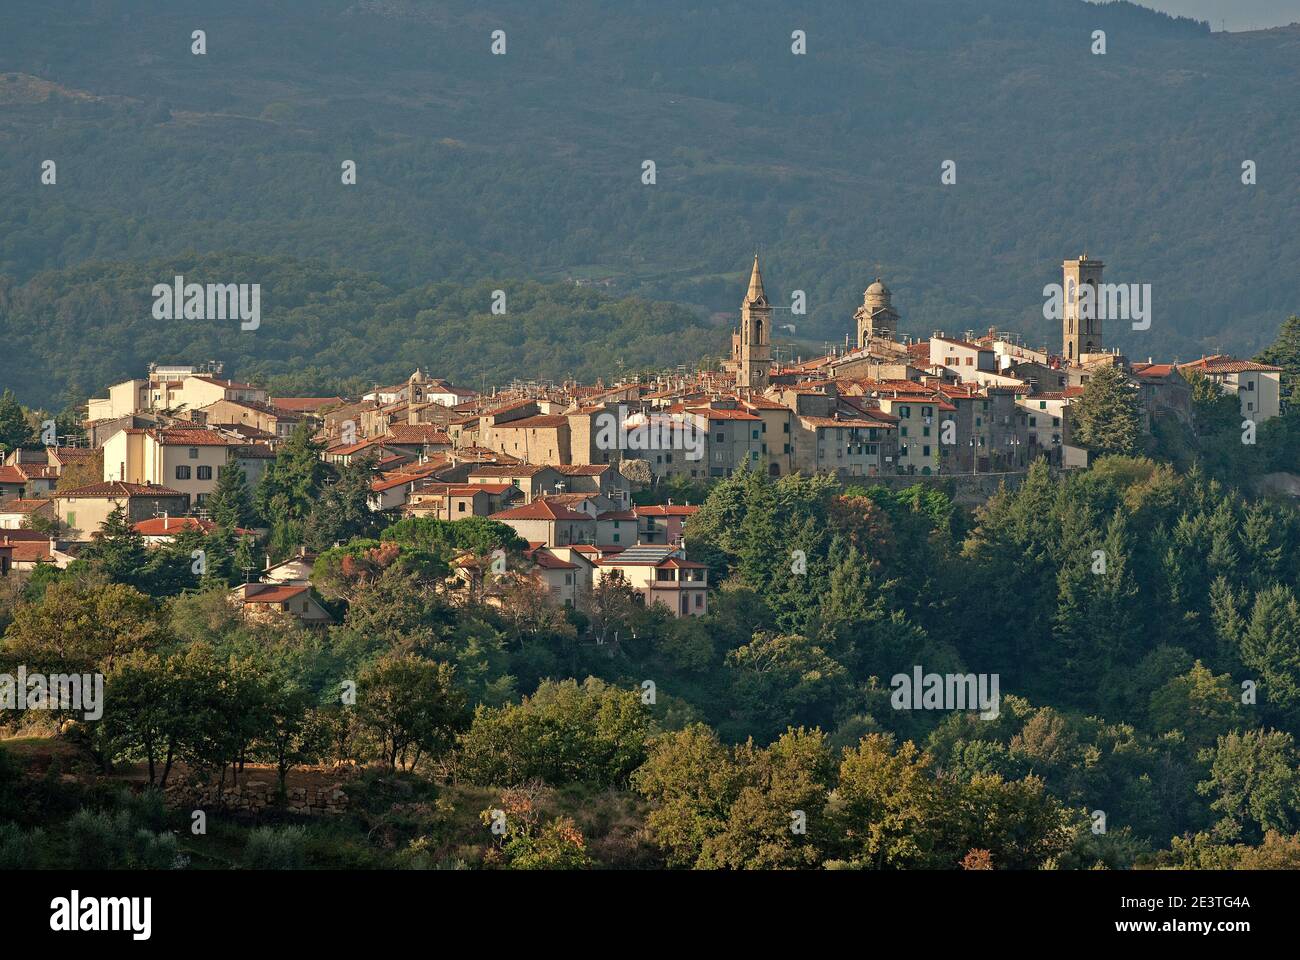 Castel del Piano, Grosseto, Tuscany, Italy Stock Photo - Alamy